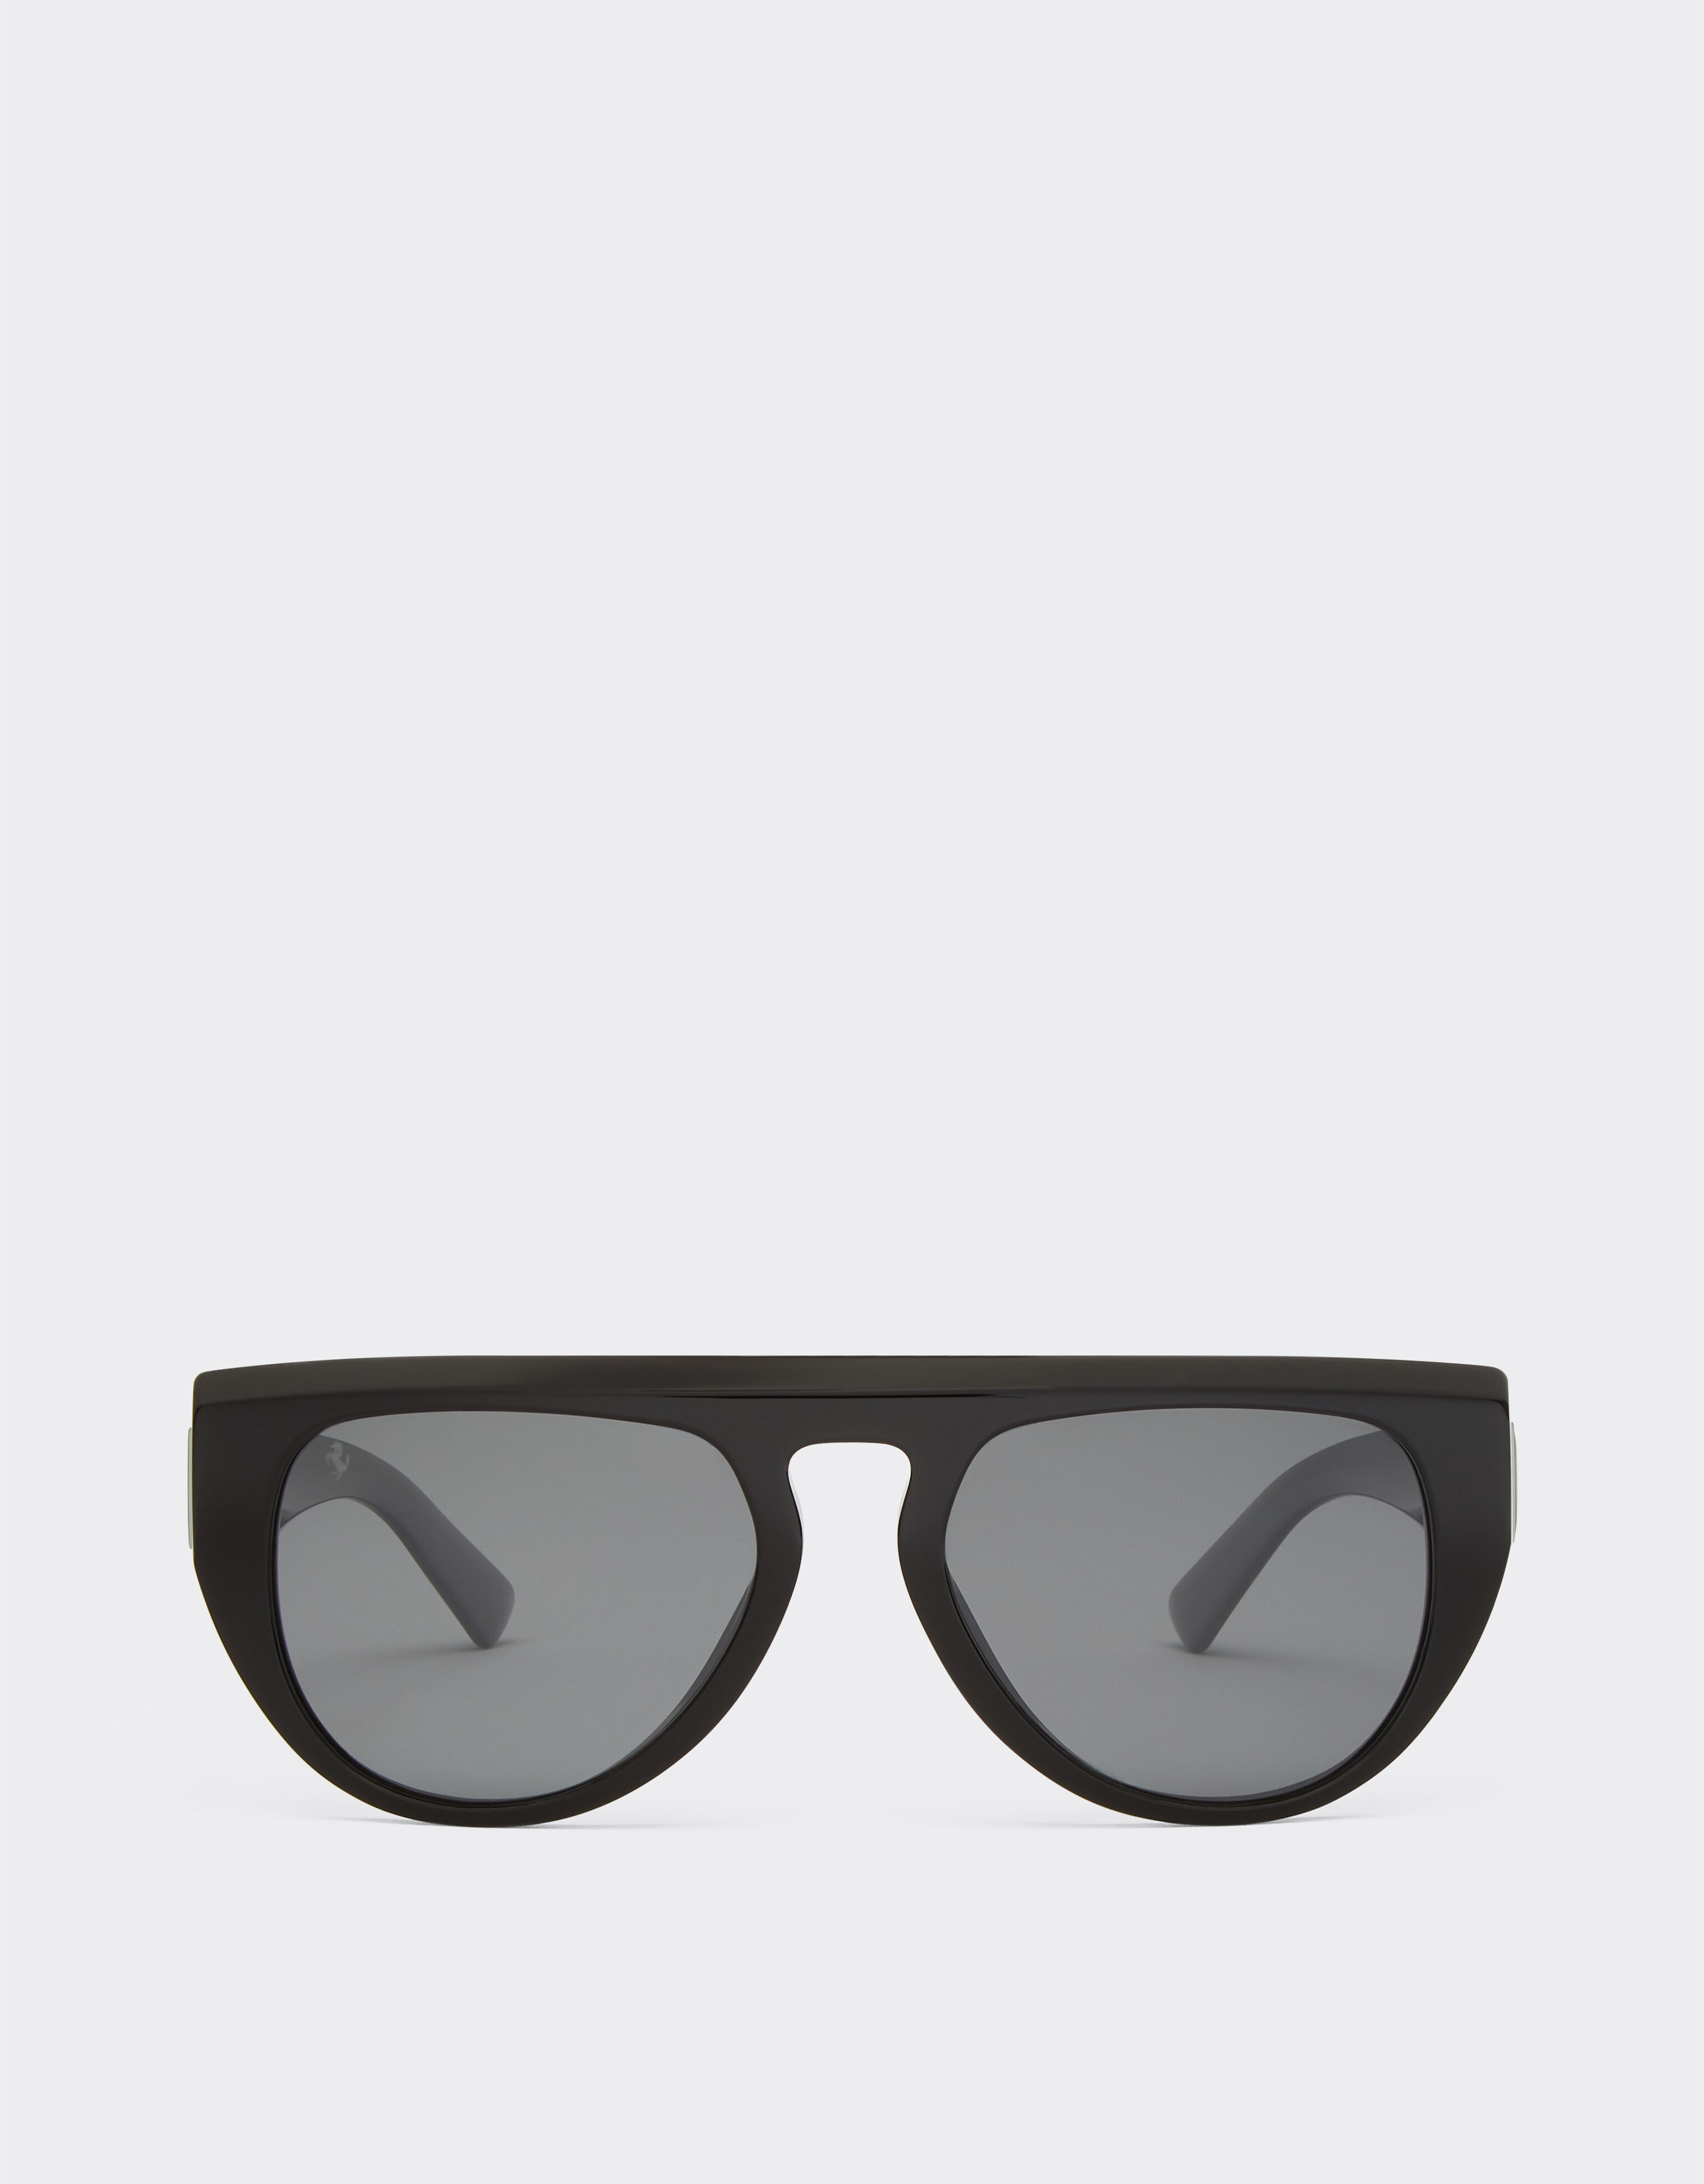 Ferrari Ferrari sunglasses in black acetate with polarised mirror lenses Ingrid F1255f